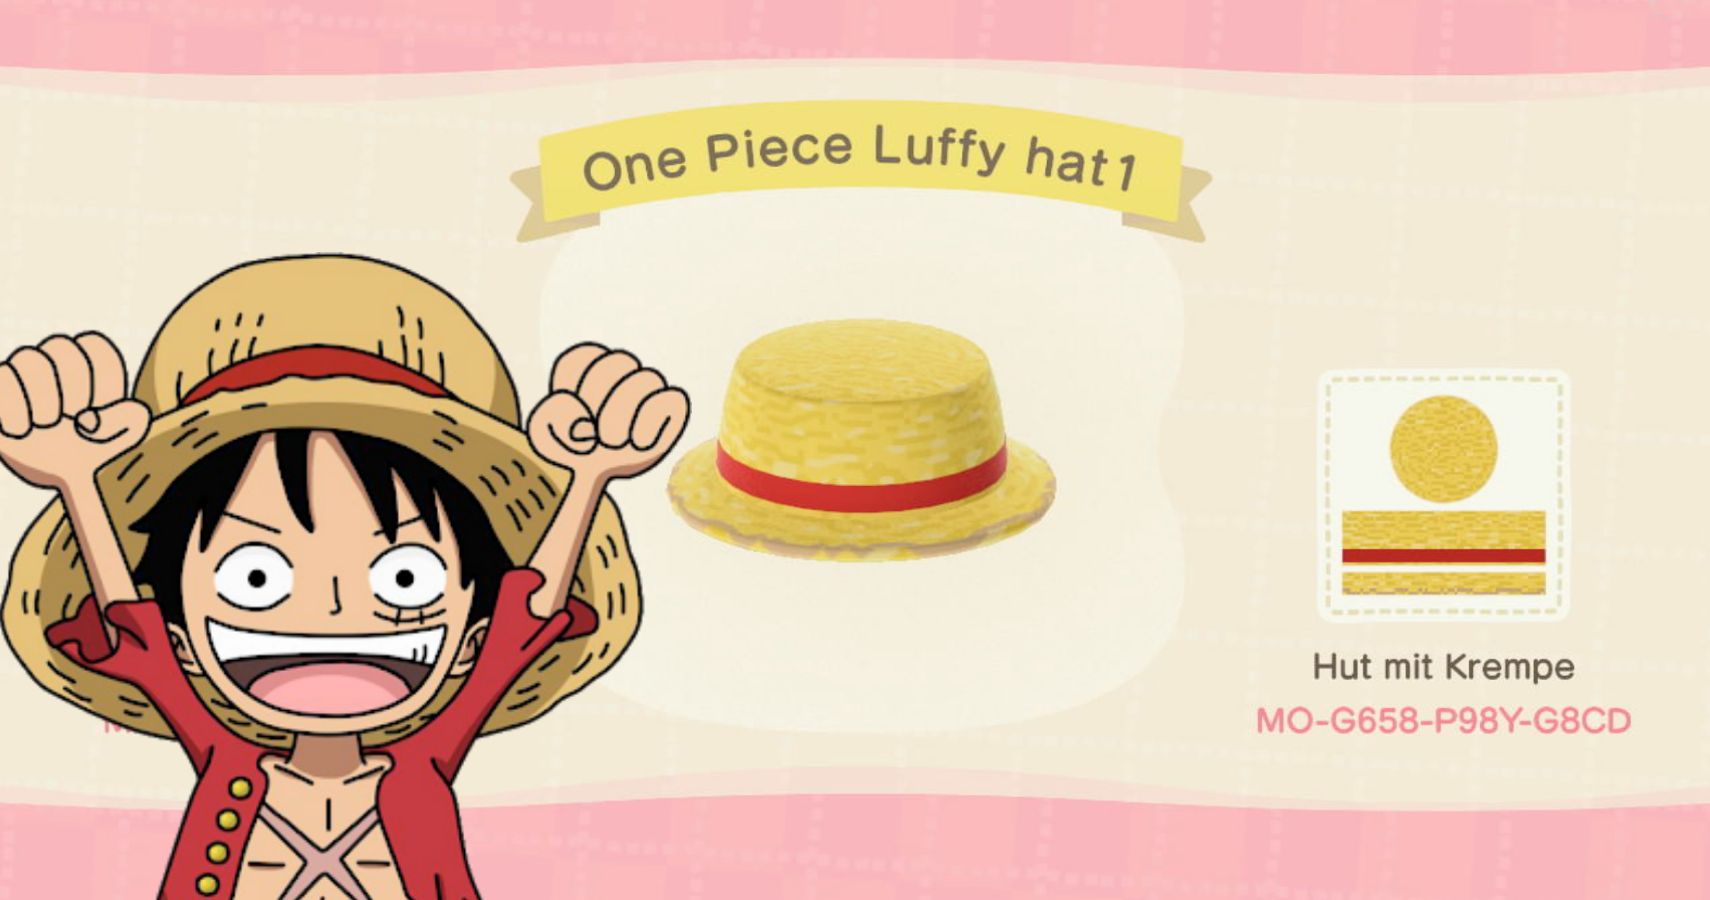 COMO Fazer Um AVATAR Do Luffy One Piece No Roblox 